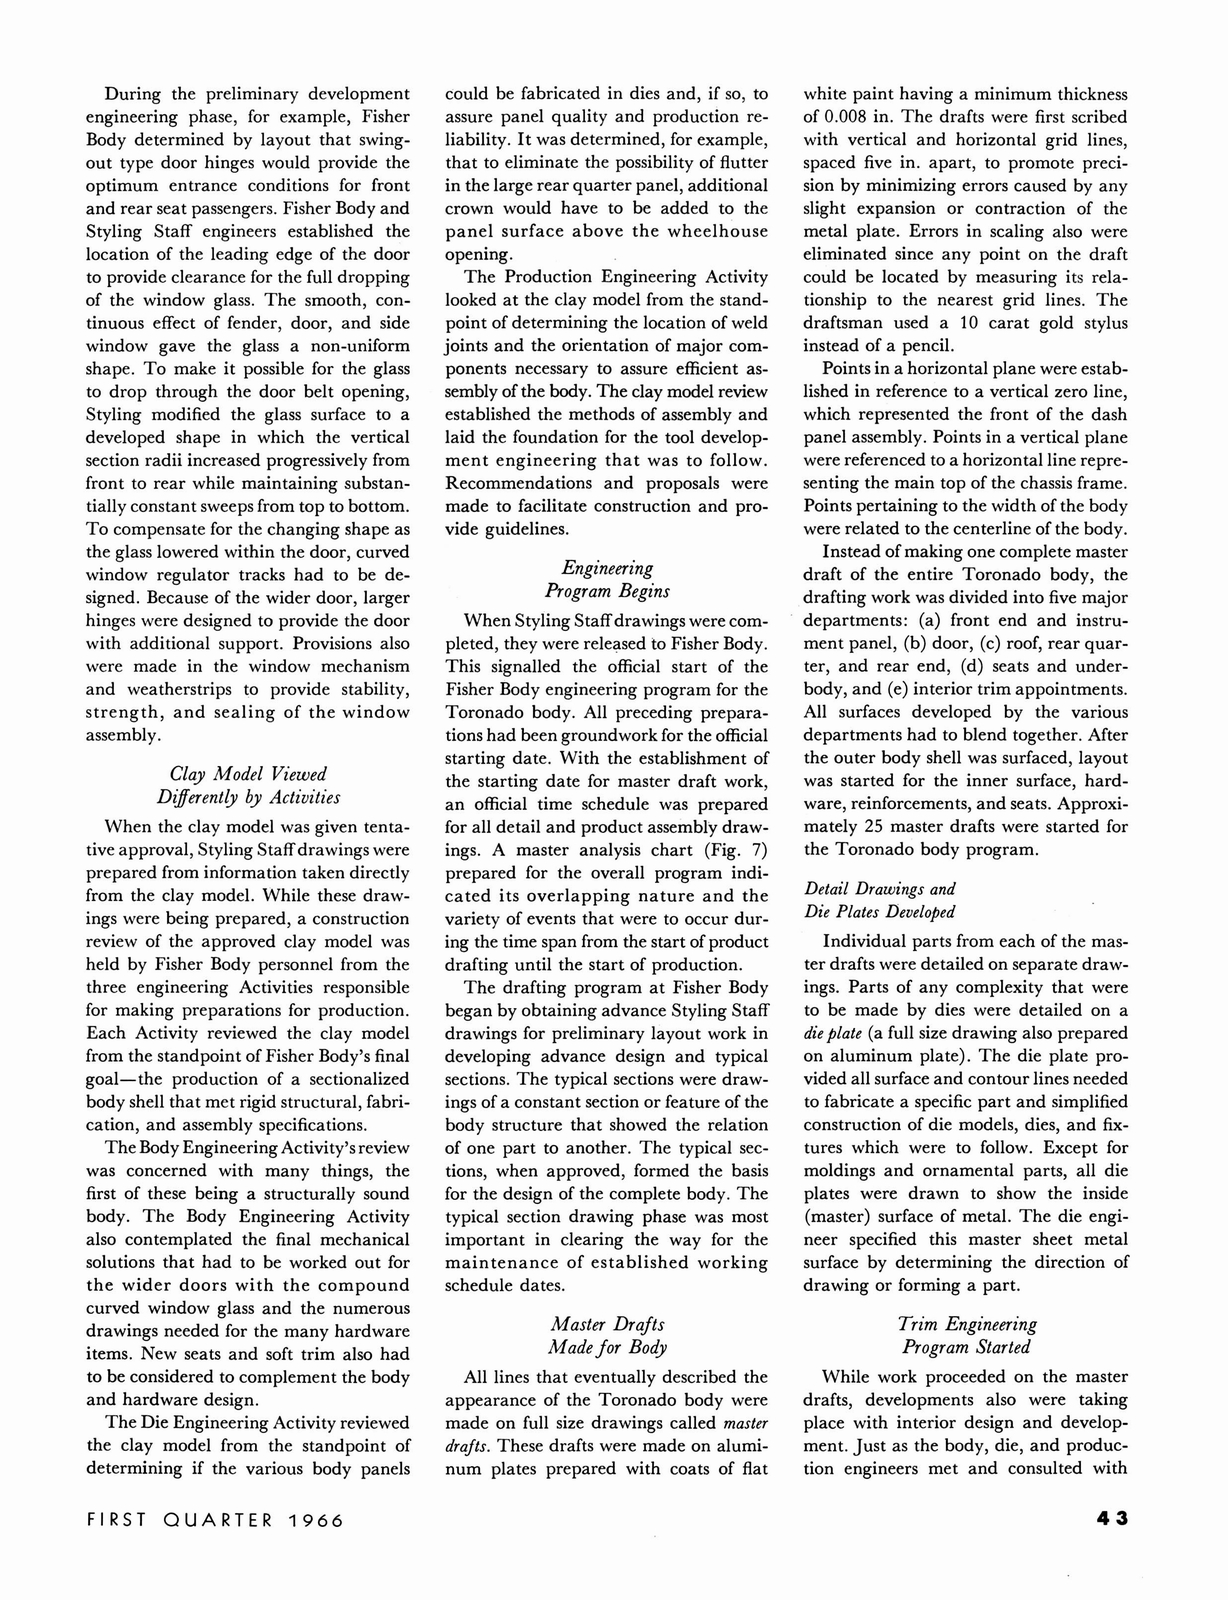 n_1966 GM Eng Journal Qtr1-43.jpg